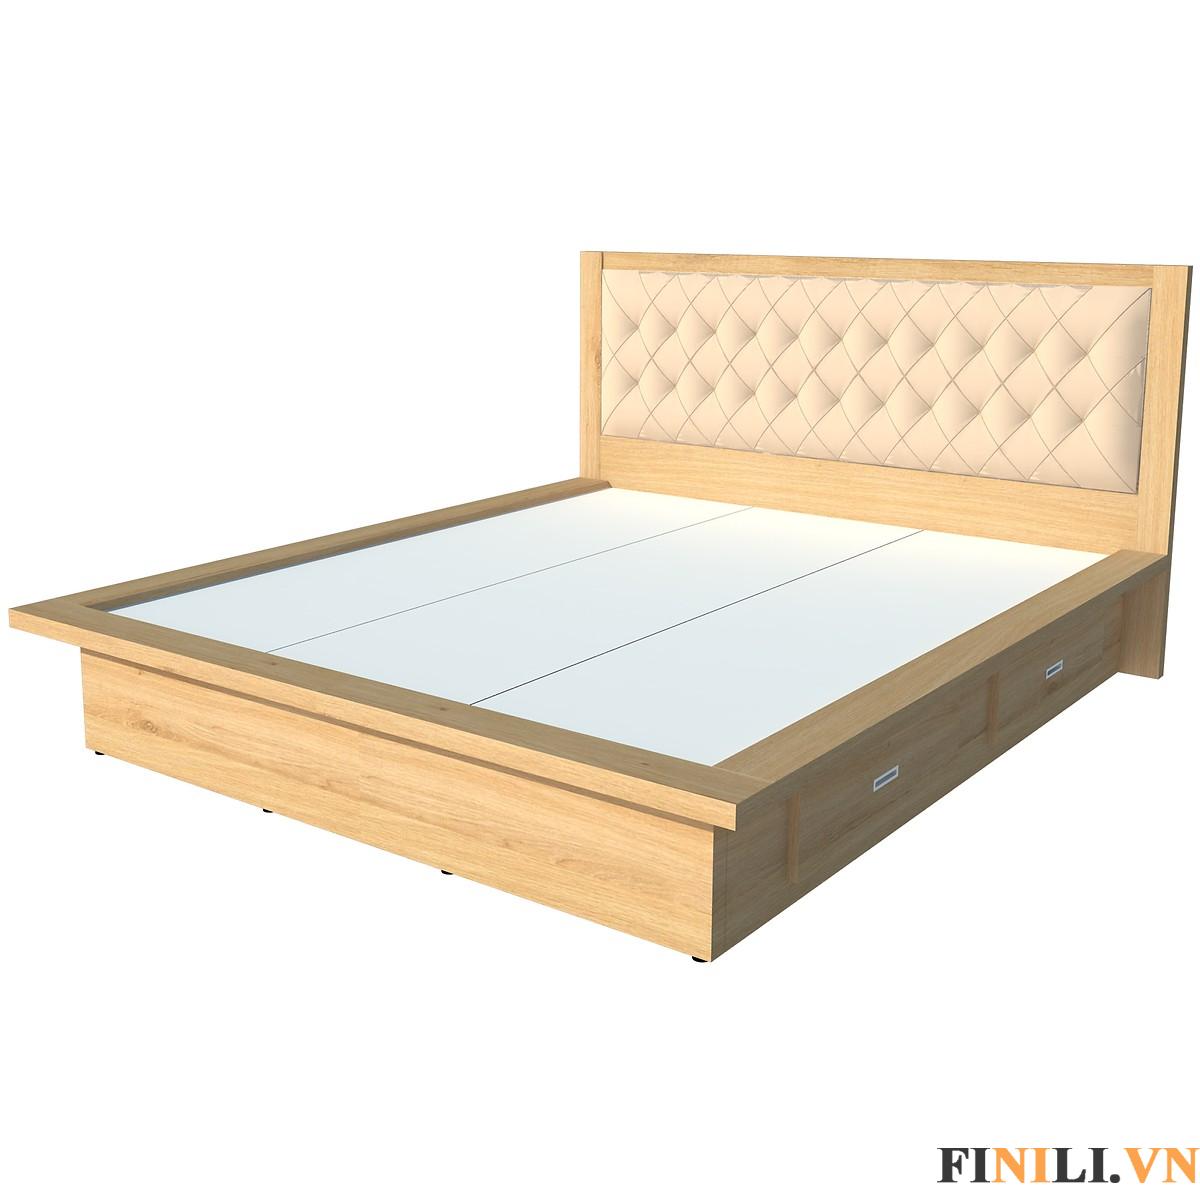 Giường ngủ 2 hộc kéo FNL 0011 là sản phẩm nội thất hữu ích đối với những gia đình có diện tích phòng ngủ nhỏ